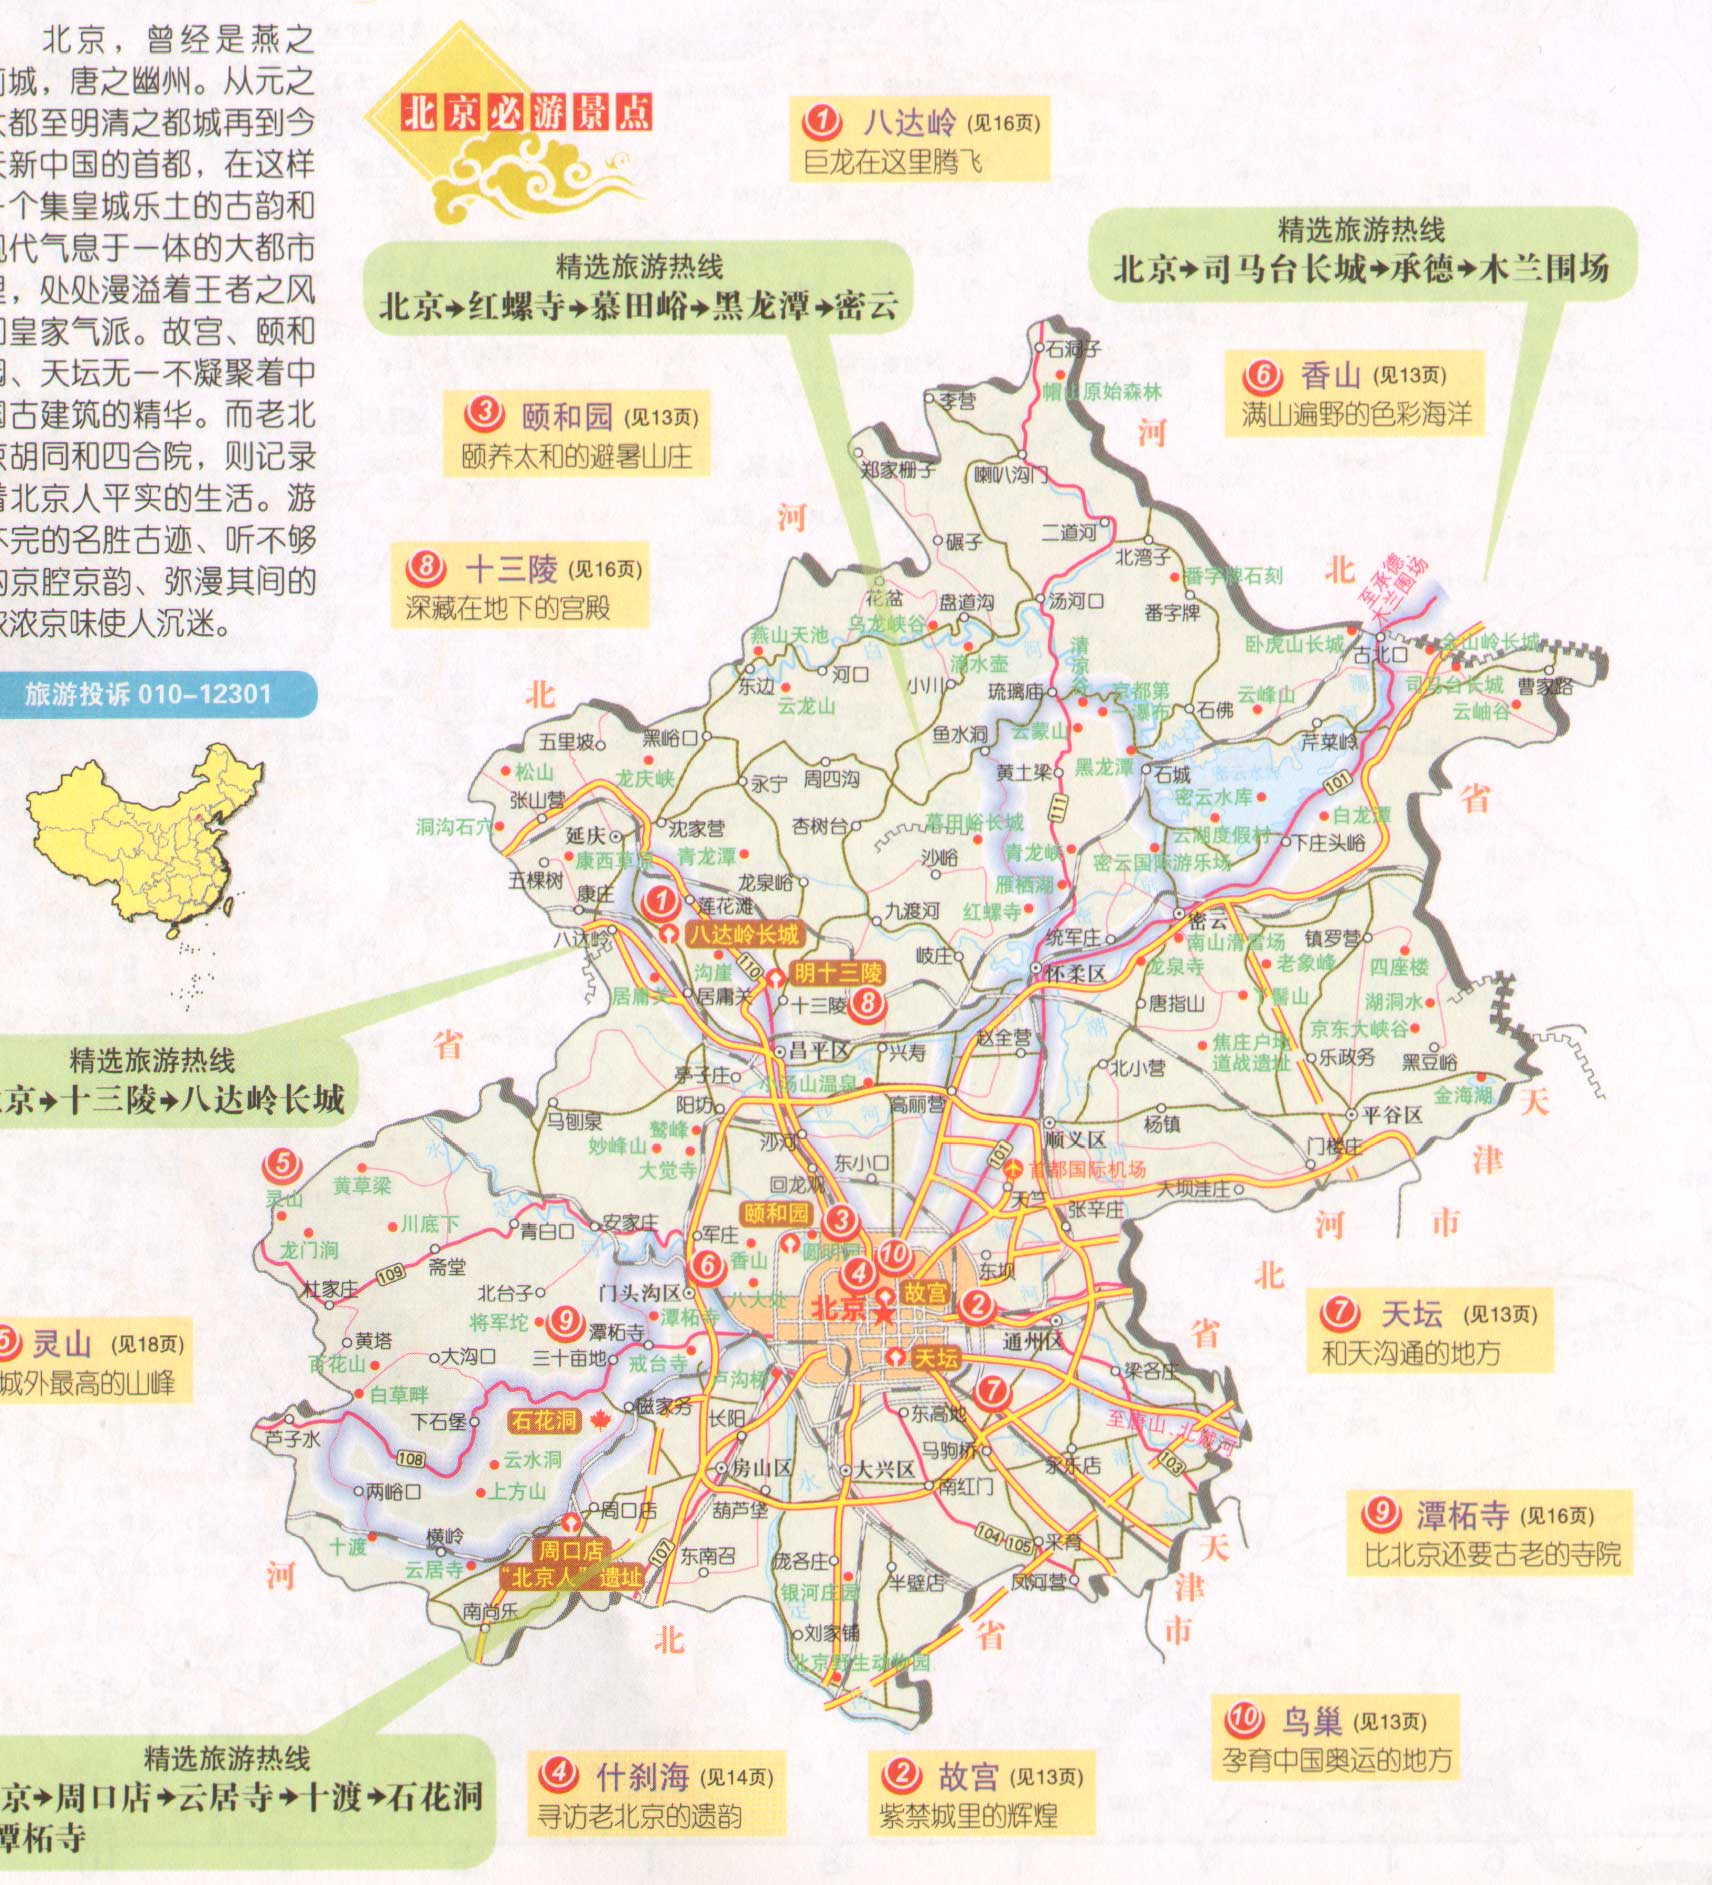 >> 北京旅游地图(北京旅游景点分布图)  景点导航:世界旅游  中国旅游图片